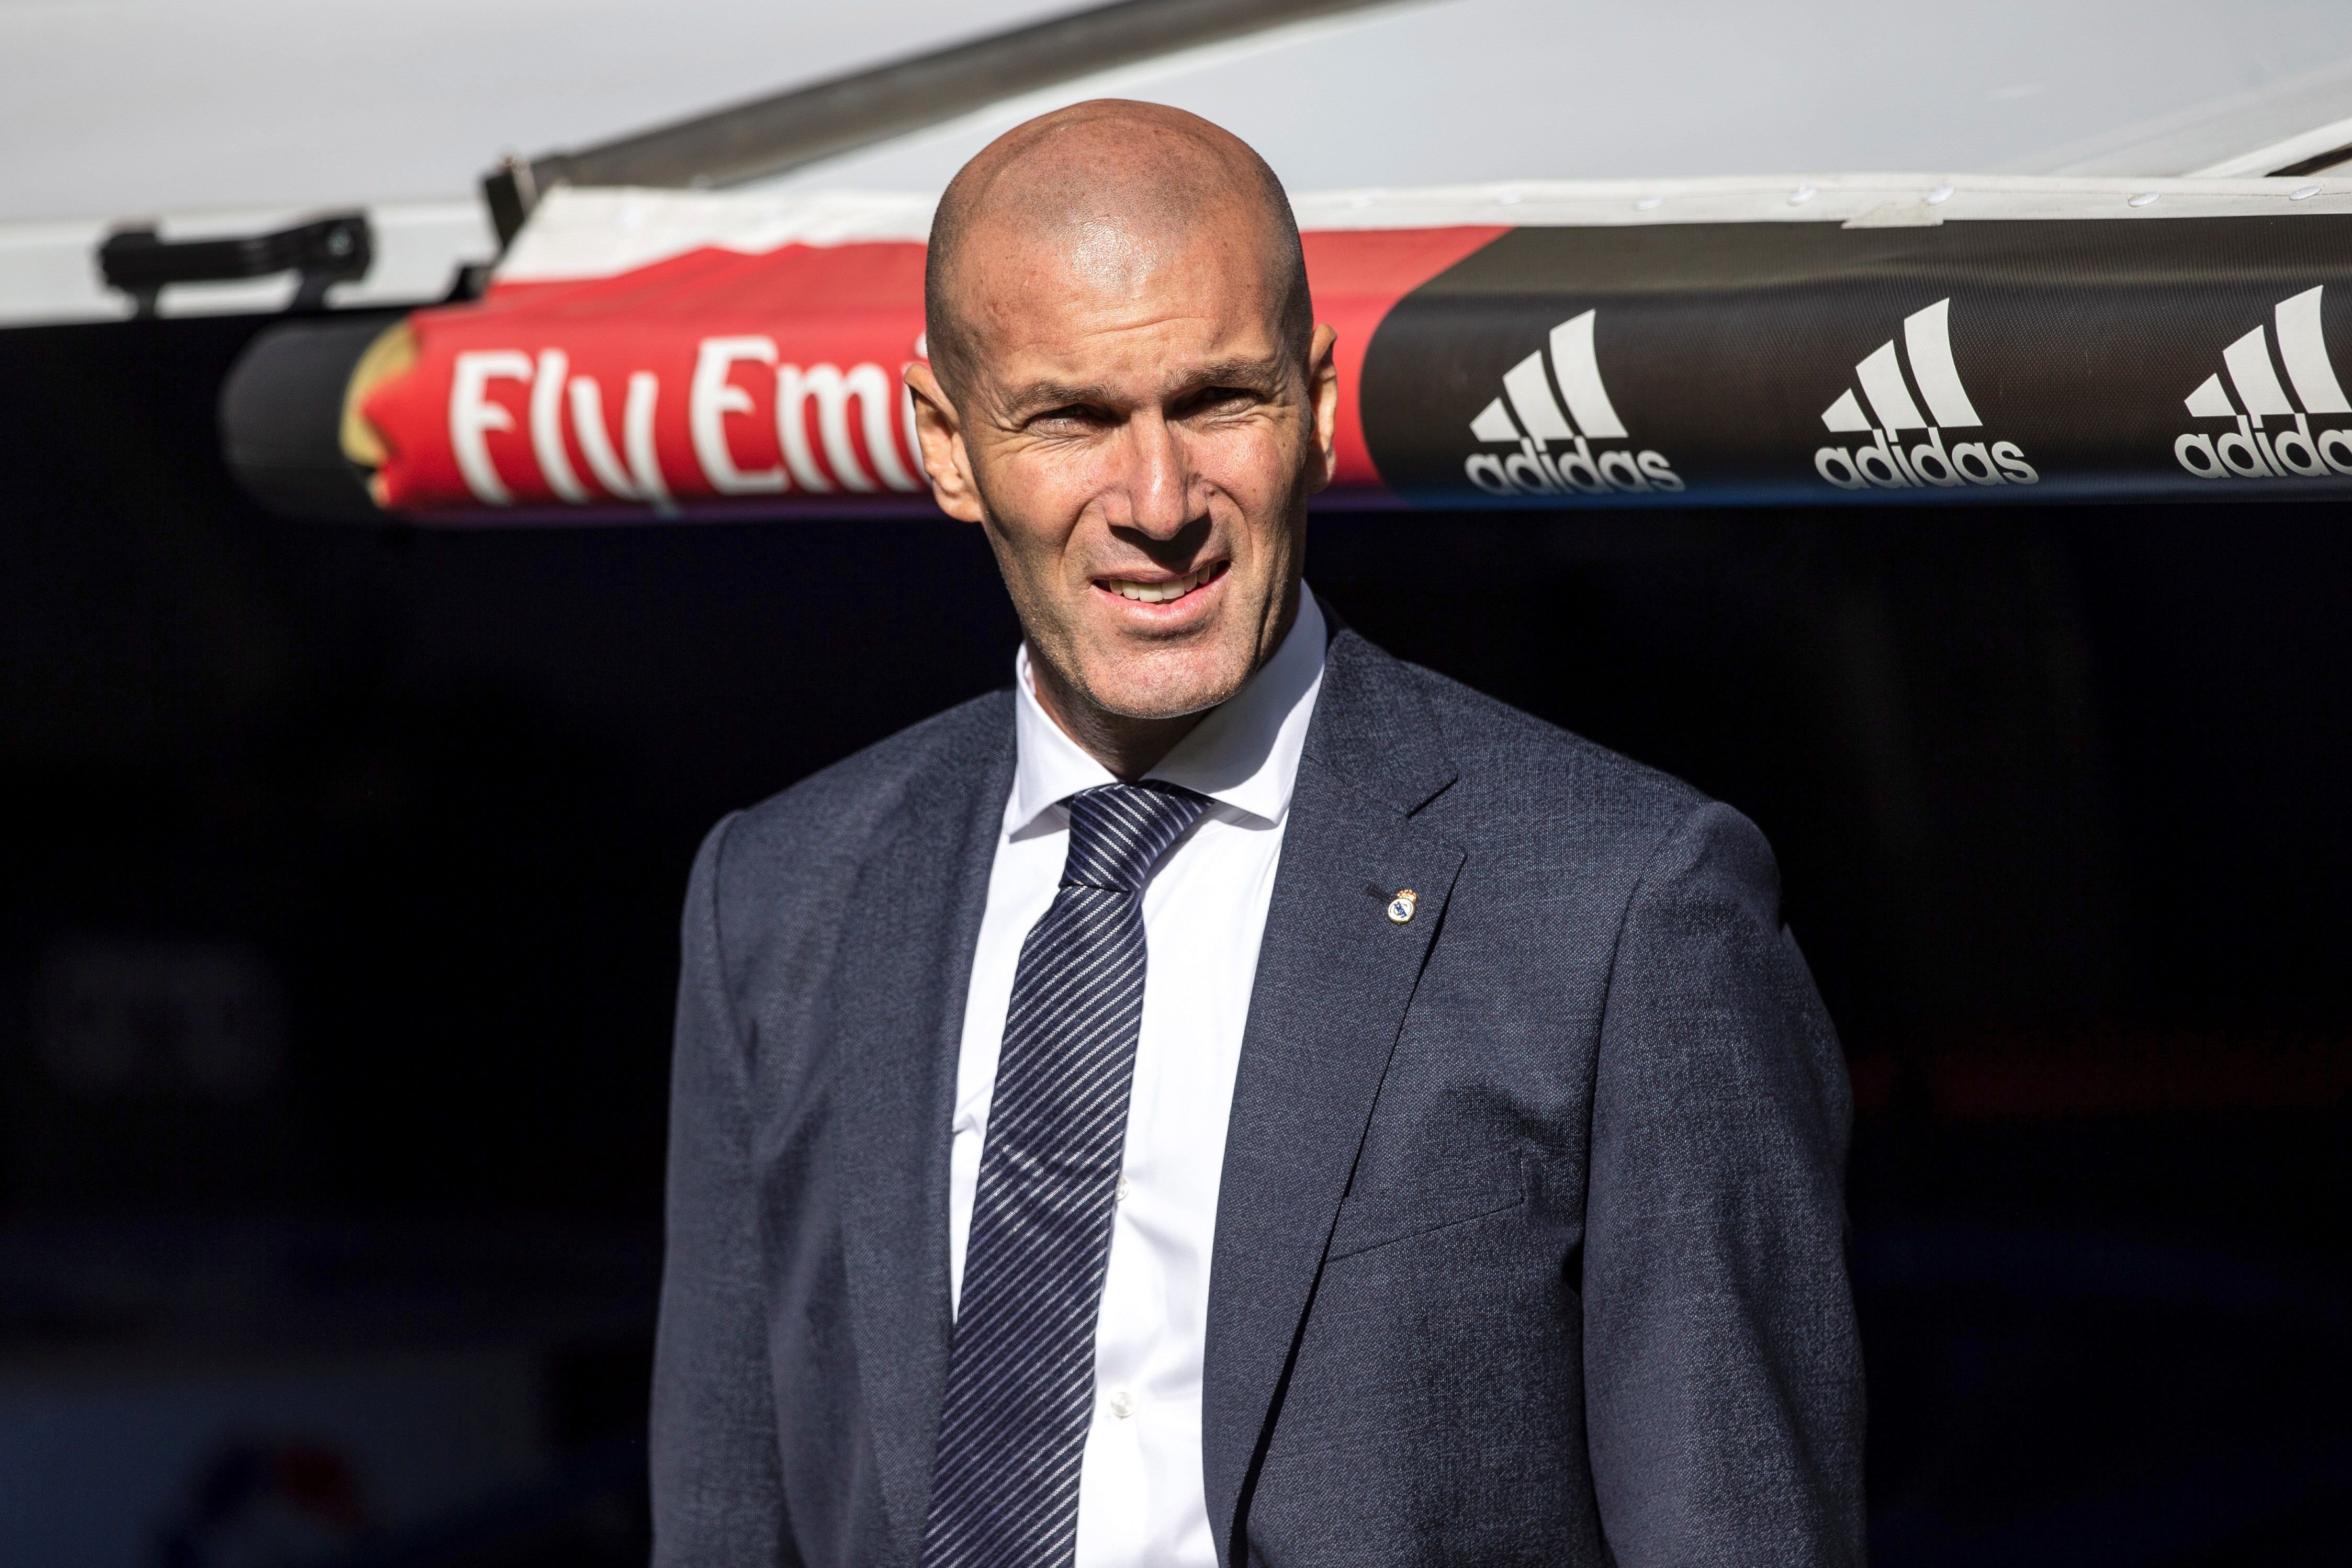 Le ha dado su palabra a Zidane de que dejará a Xavi Hernández y al Barça por el PSG, y cumplirá